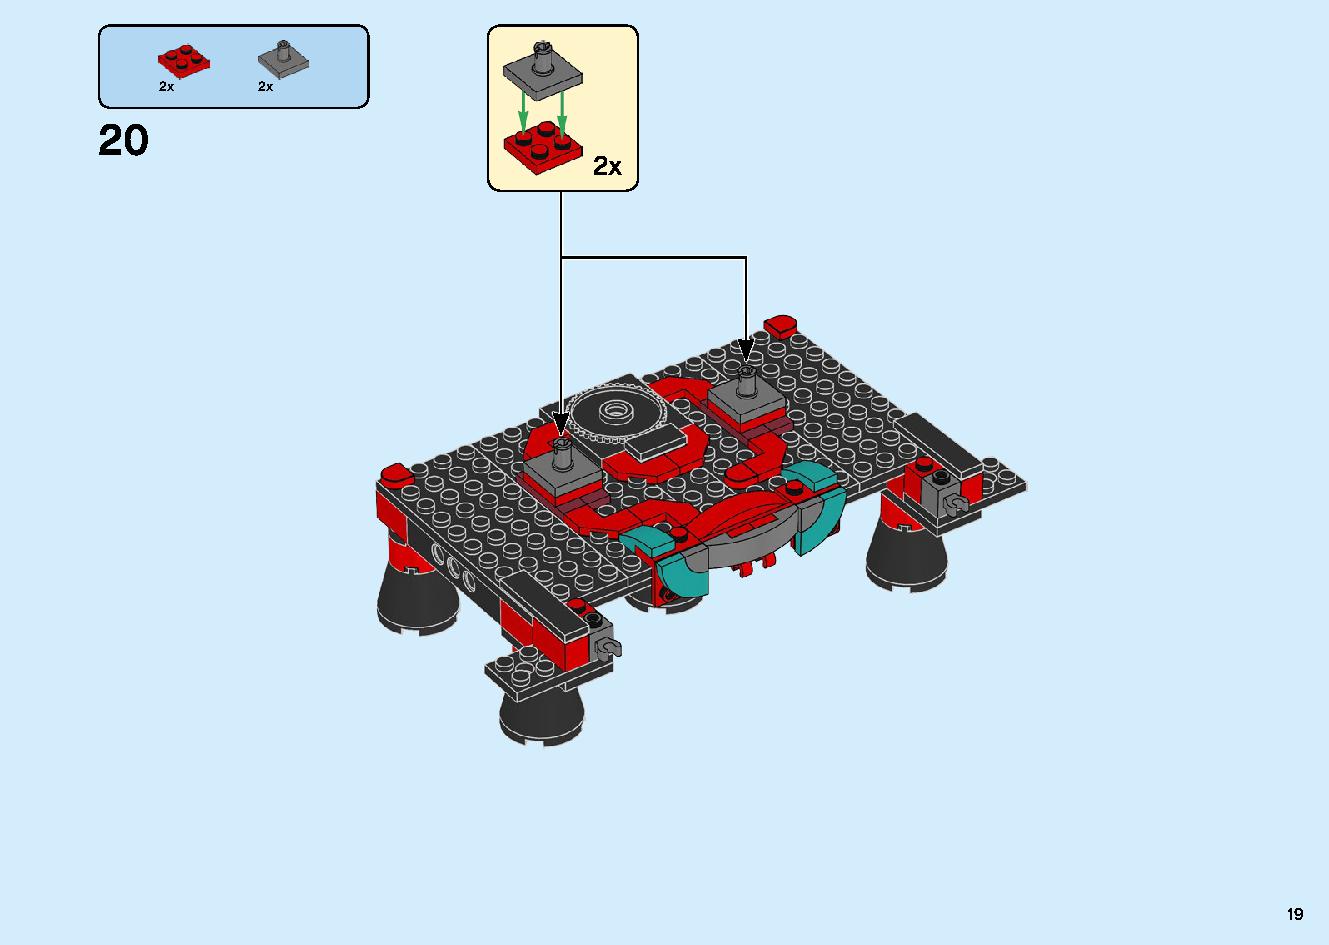 マッドキング神殿 71712 レゴの商品情報 レゴの説明書・組立方法 19 page